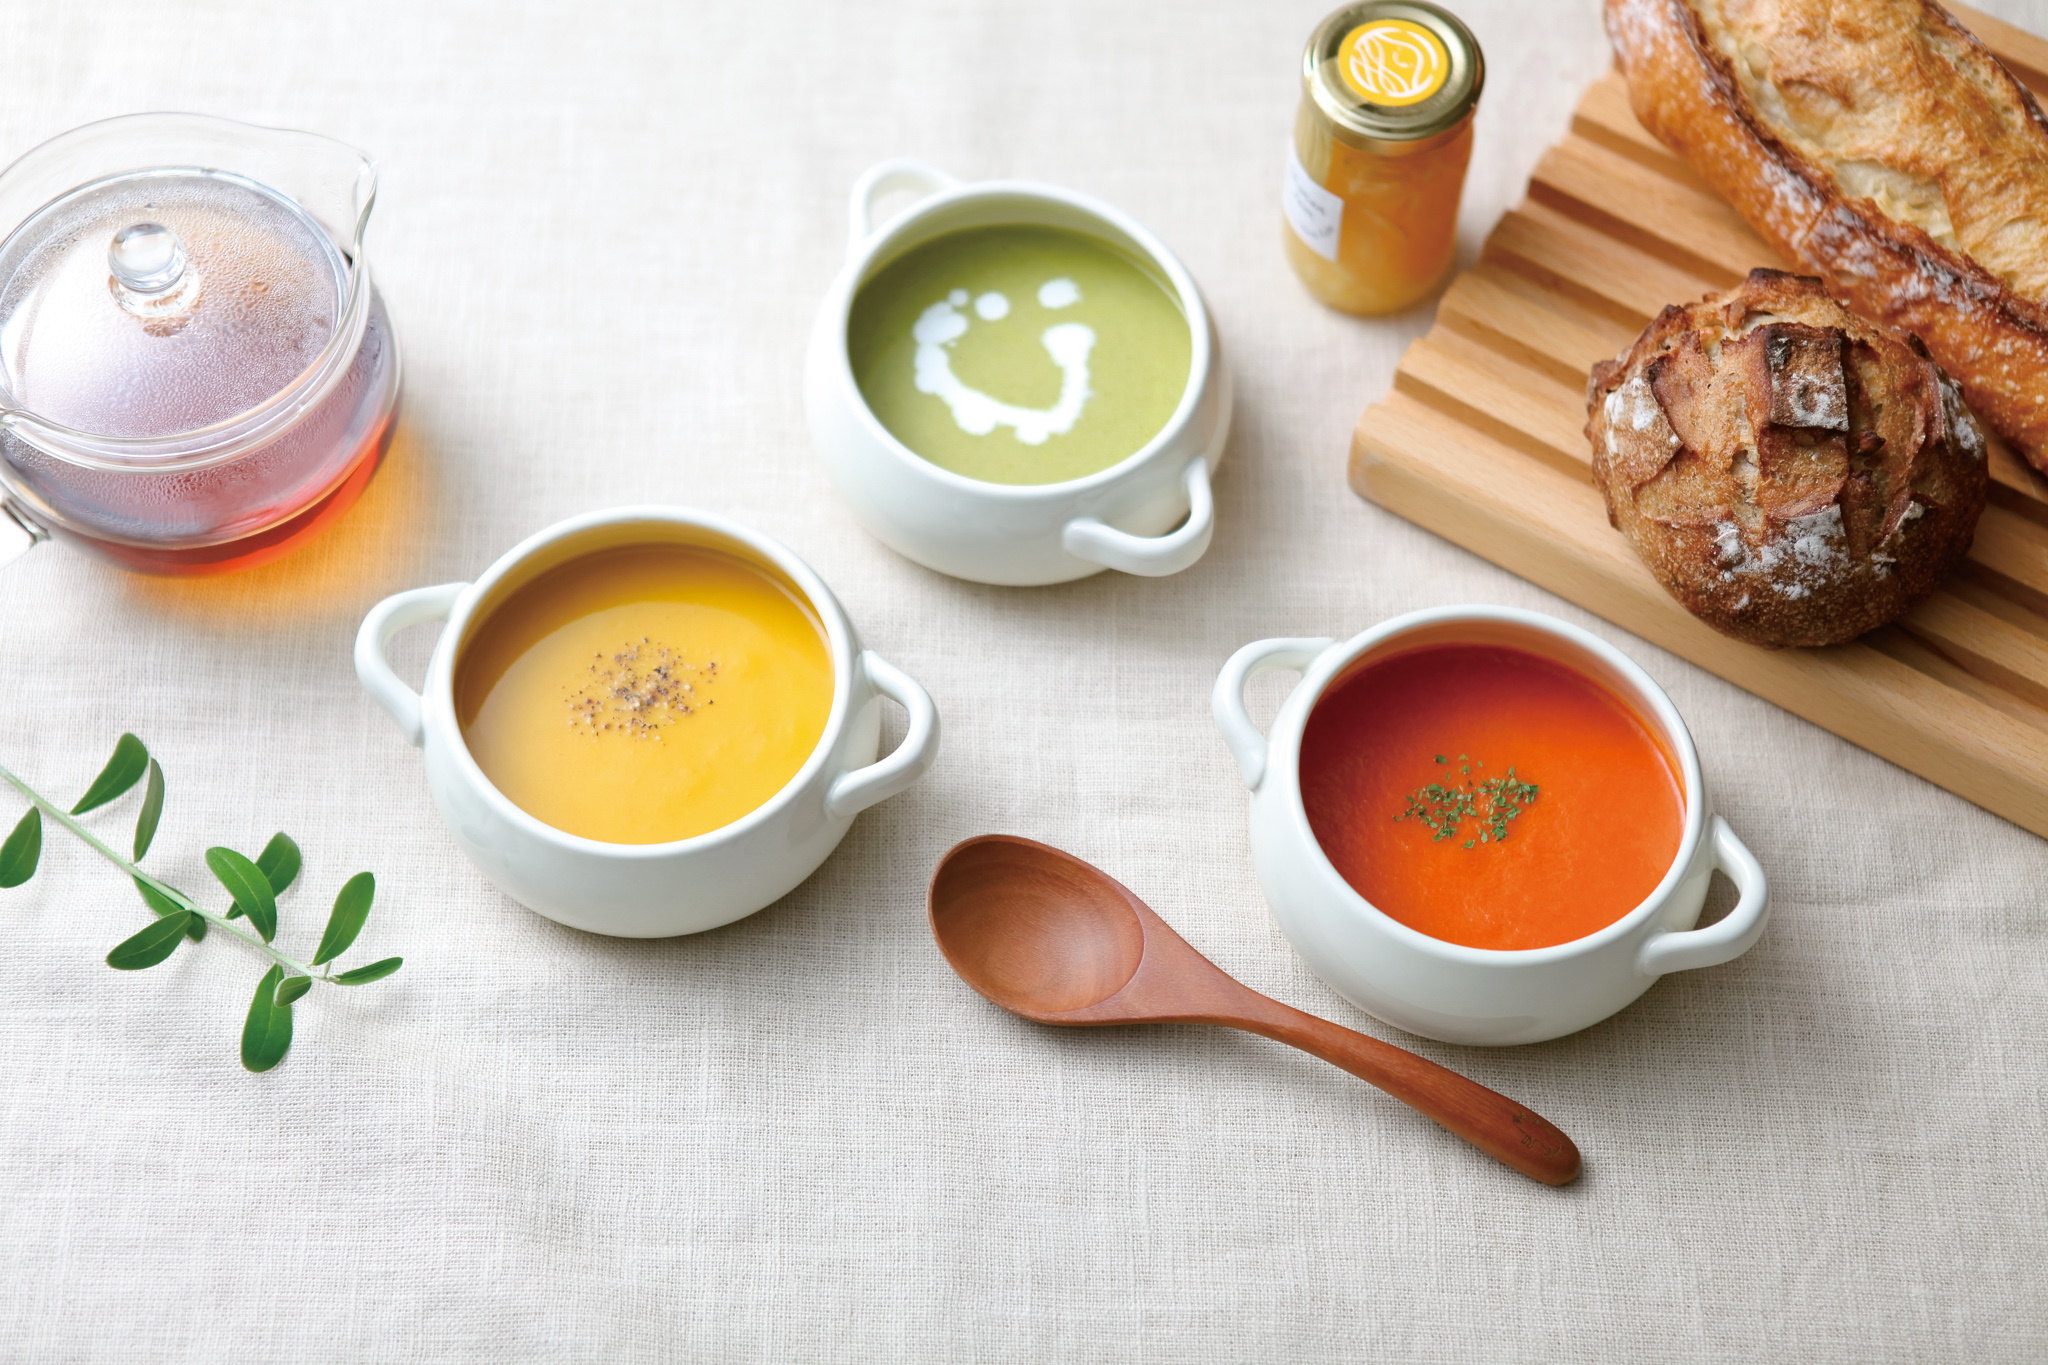 スープ3種詰め合わせ6食セット